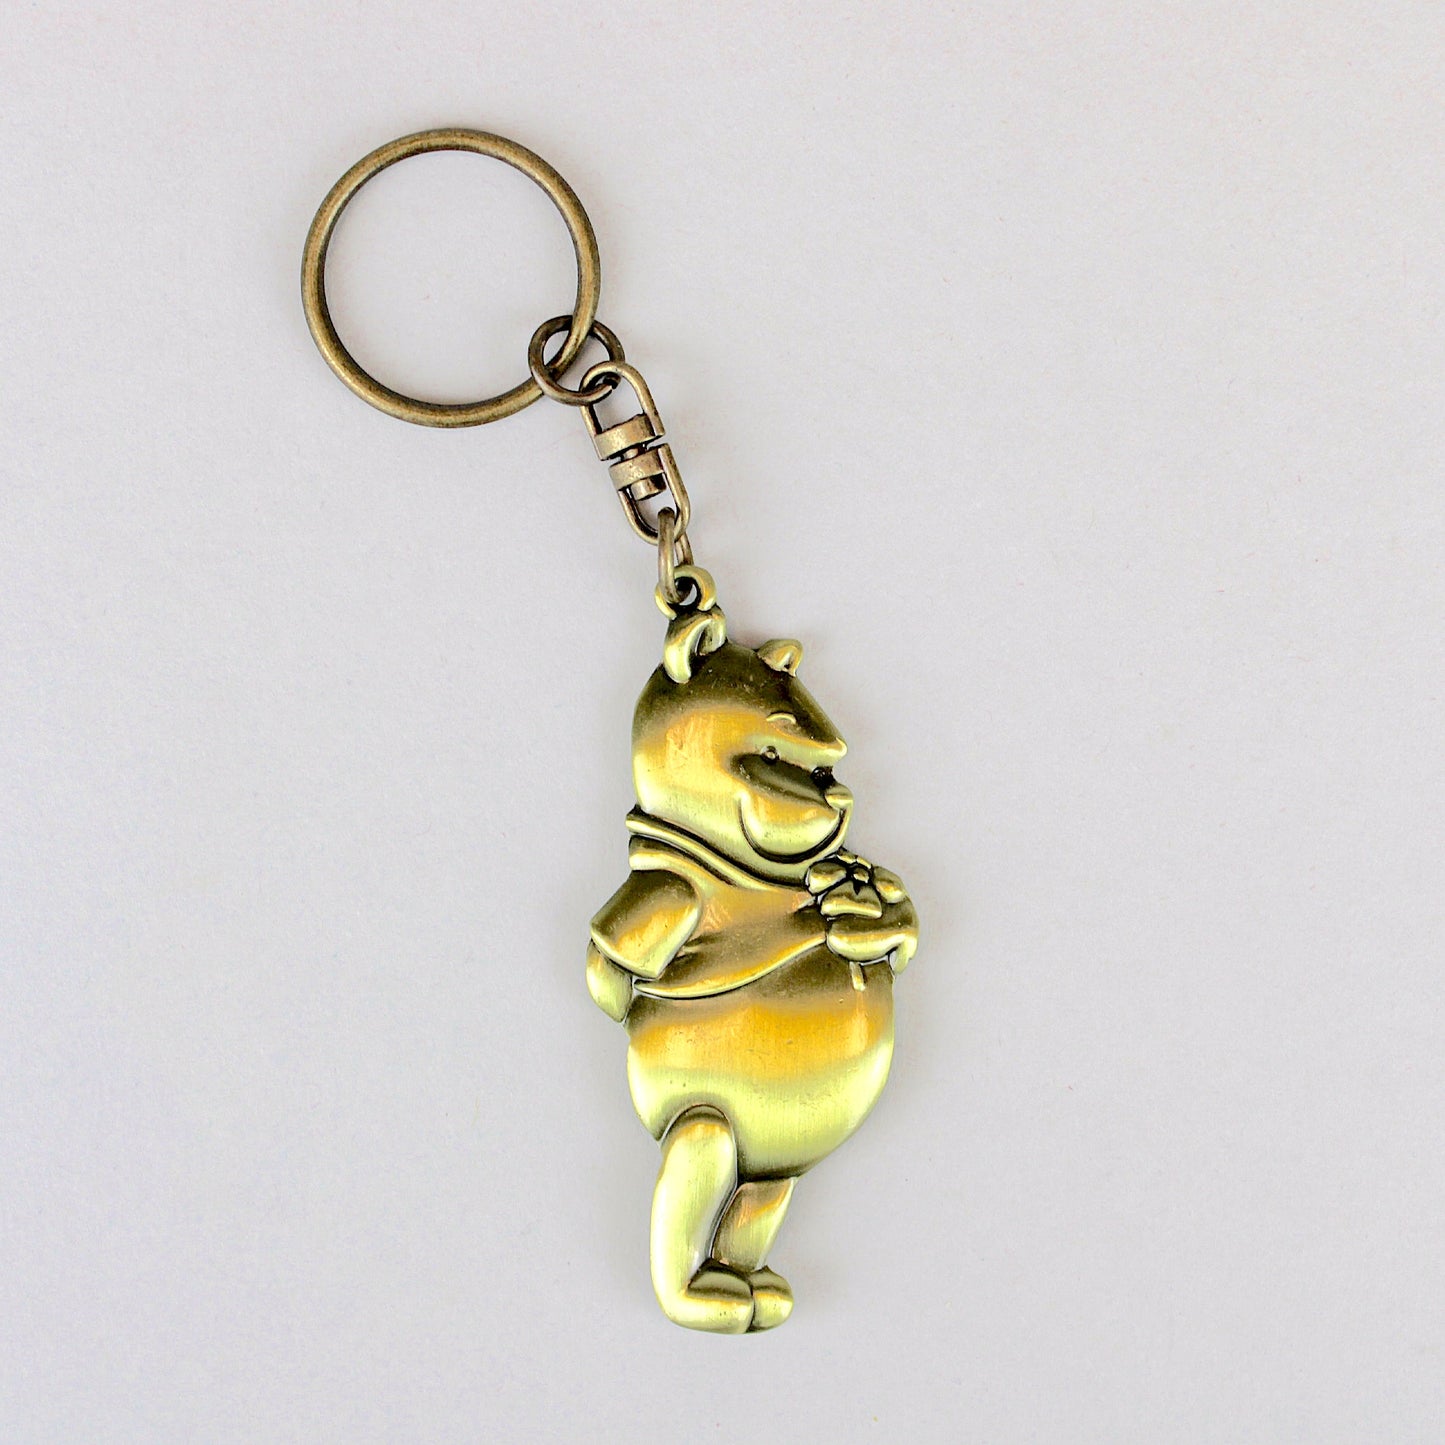 Winnie the Pooh (Disney) Large Brass Keychain